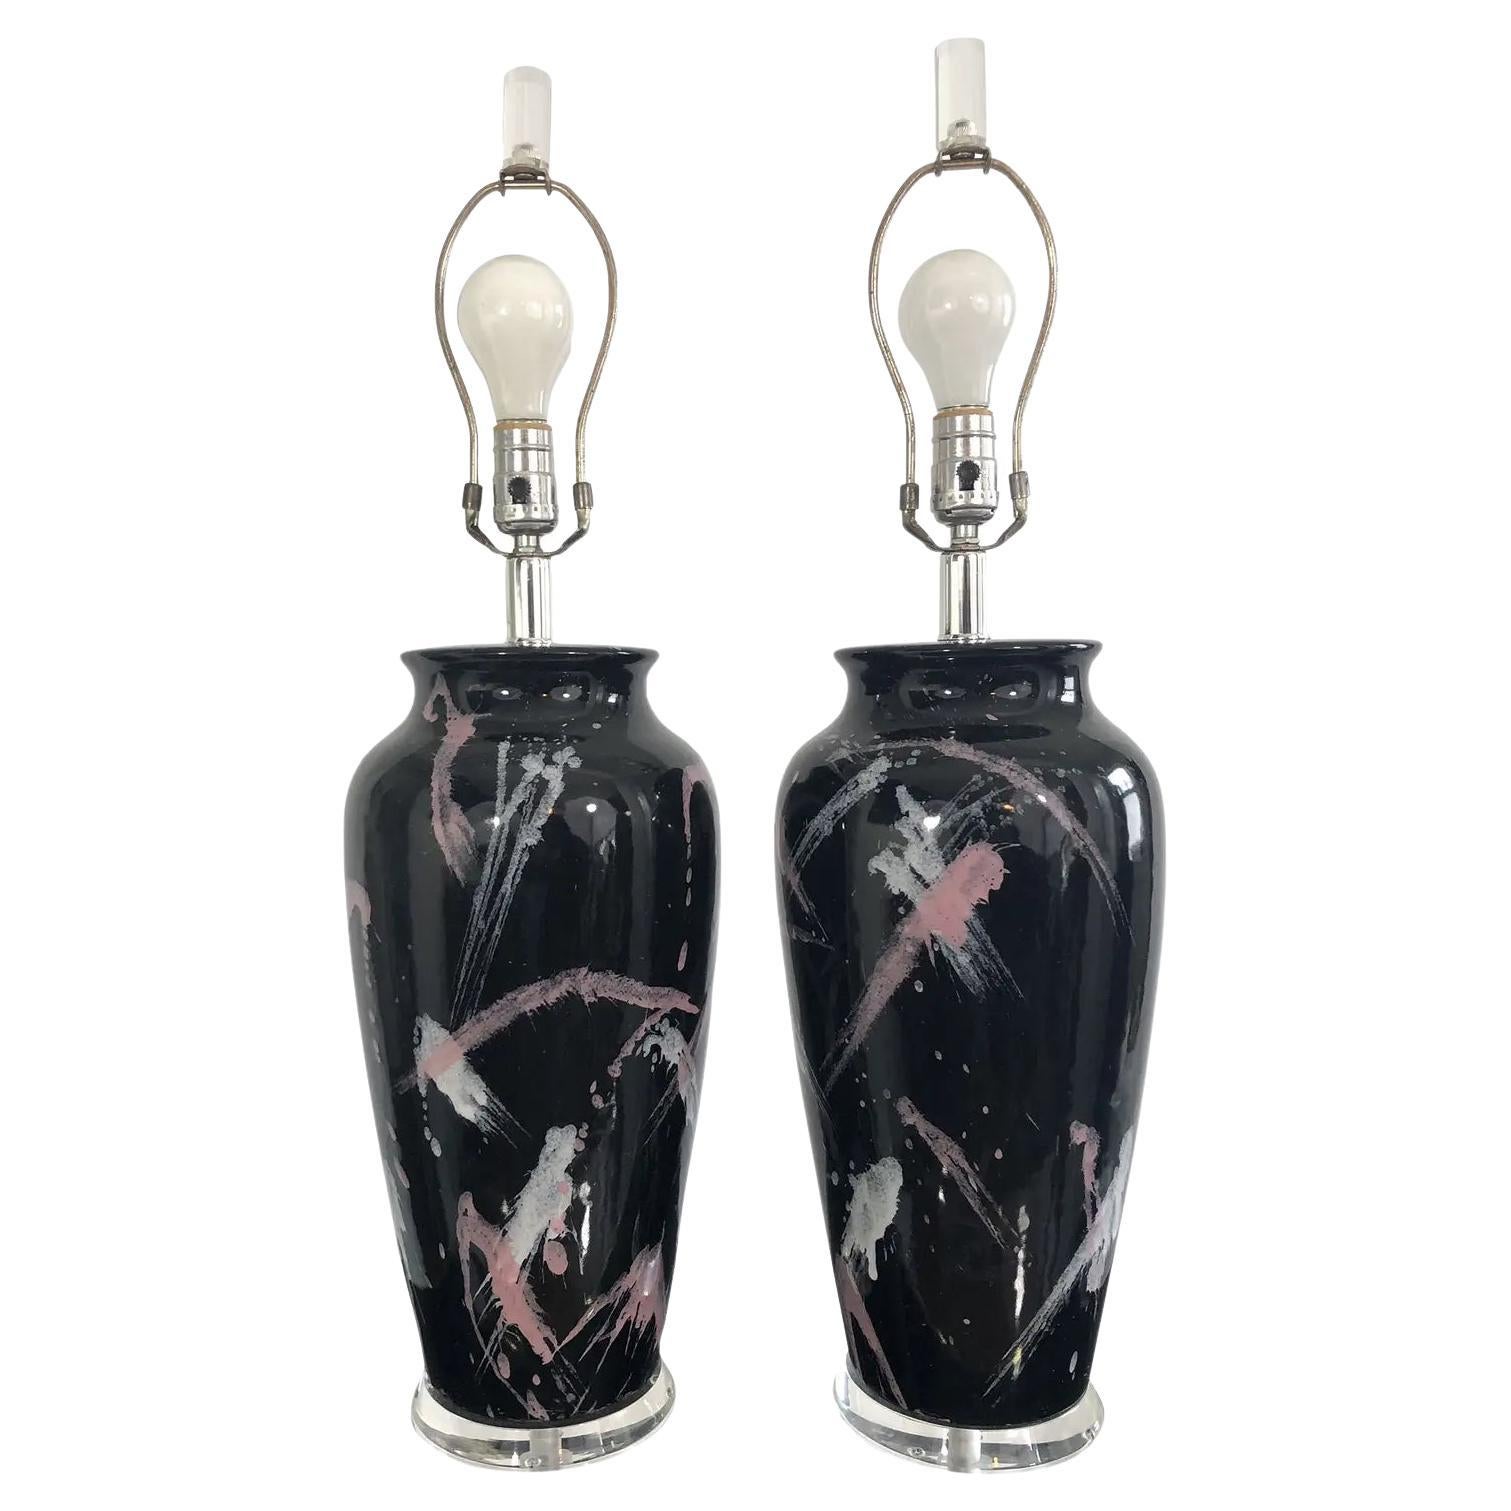 Postmoderne Vintage-Lampen im Jackson Pollock-Stil mit gesprenkelter Glasur im Vintage-Stil - ein Paar im Angebot